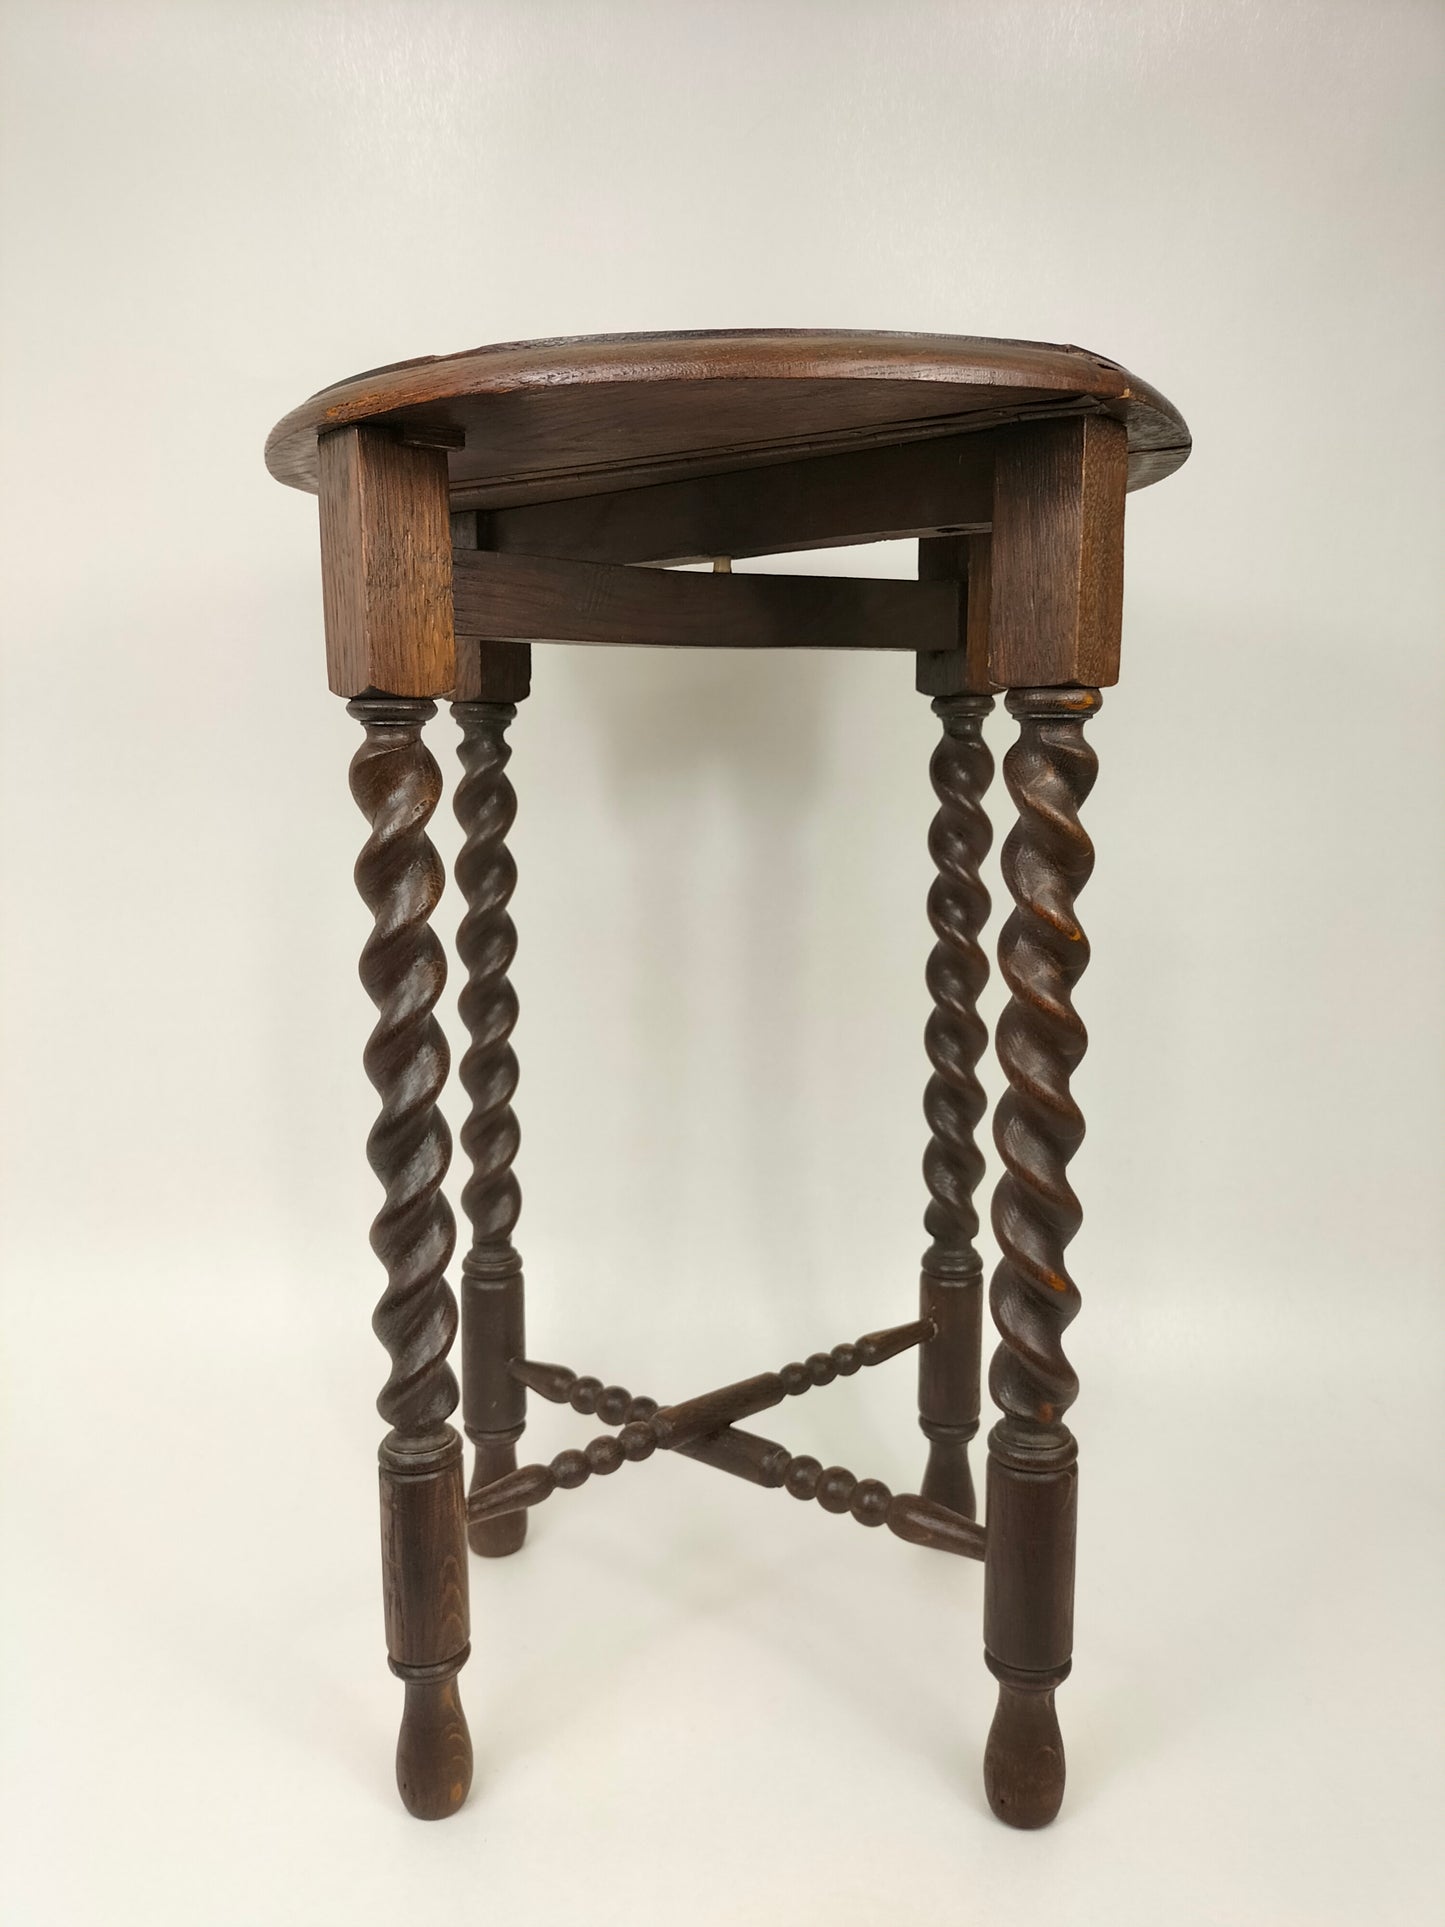 طاولة قابلة للطي من خشب البلوط العتيق "تويست الشعير" // إنجلترا - أوائل القرن العشرين